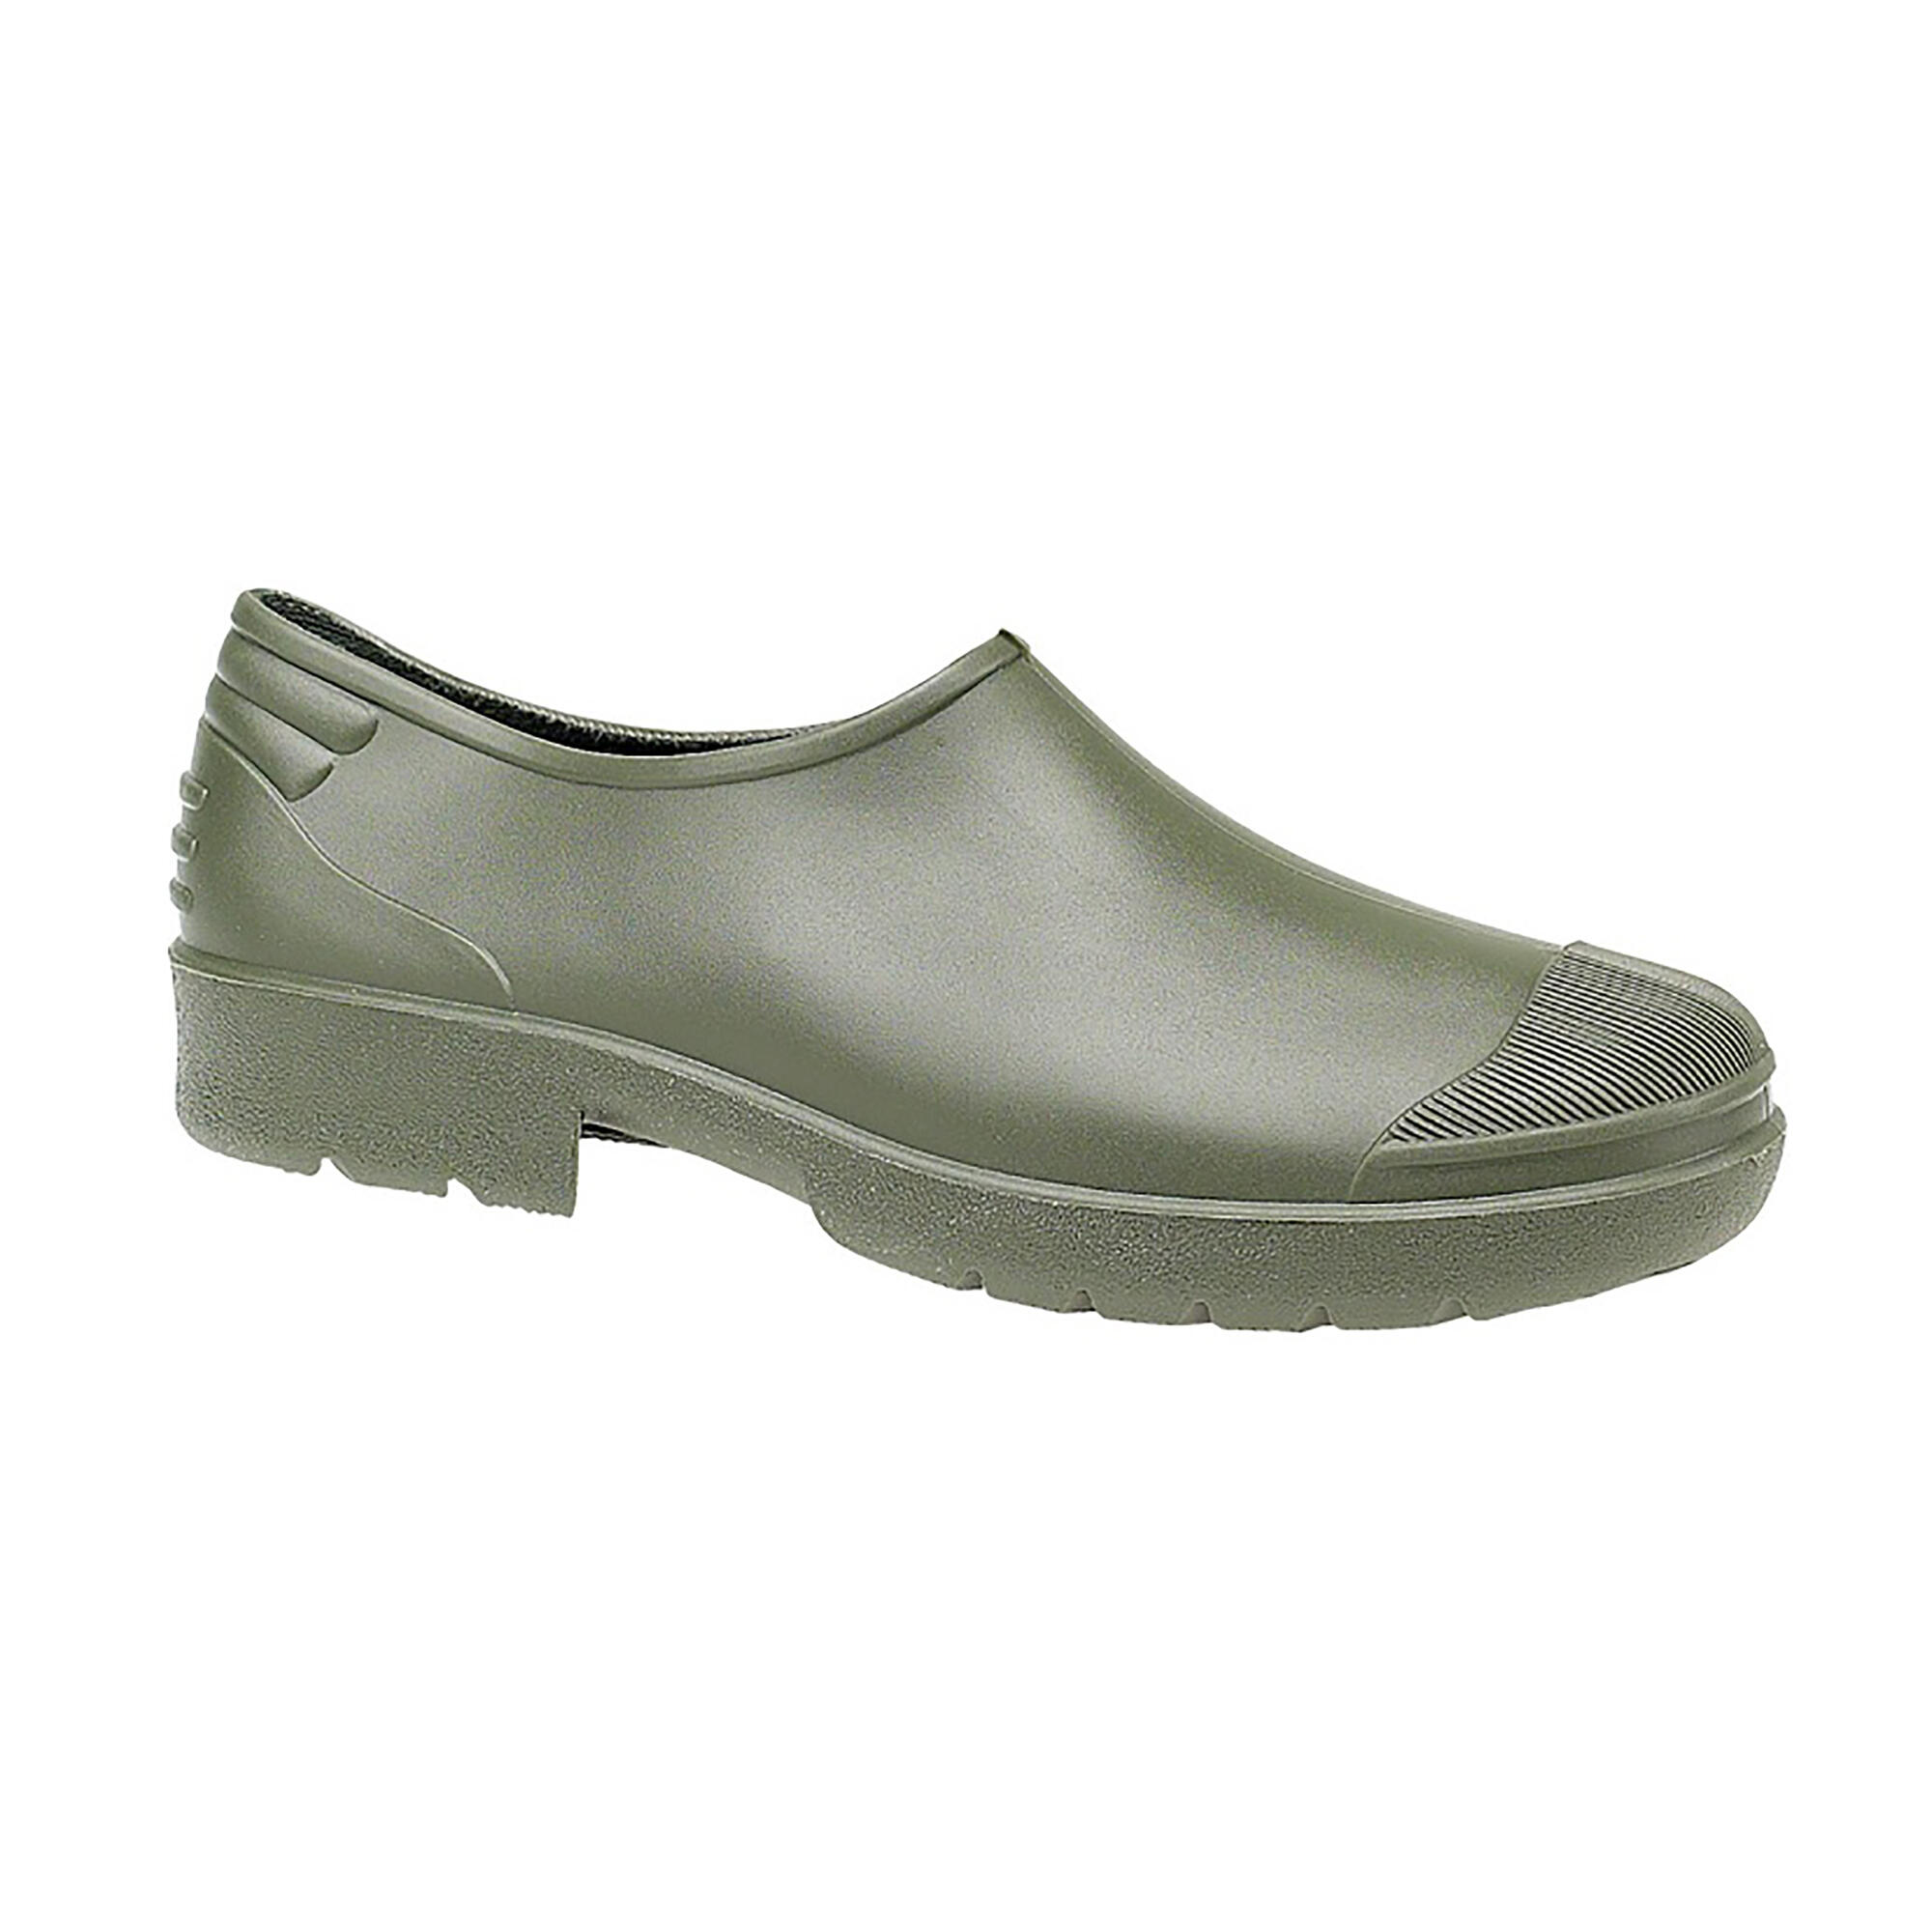 Primera Gardening Shoe / Womens Shoes / Garden Shoes (Green) 1/3